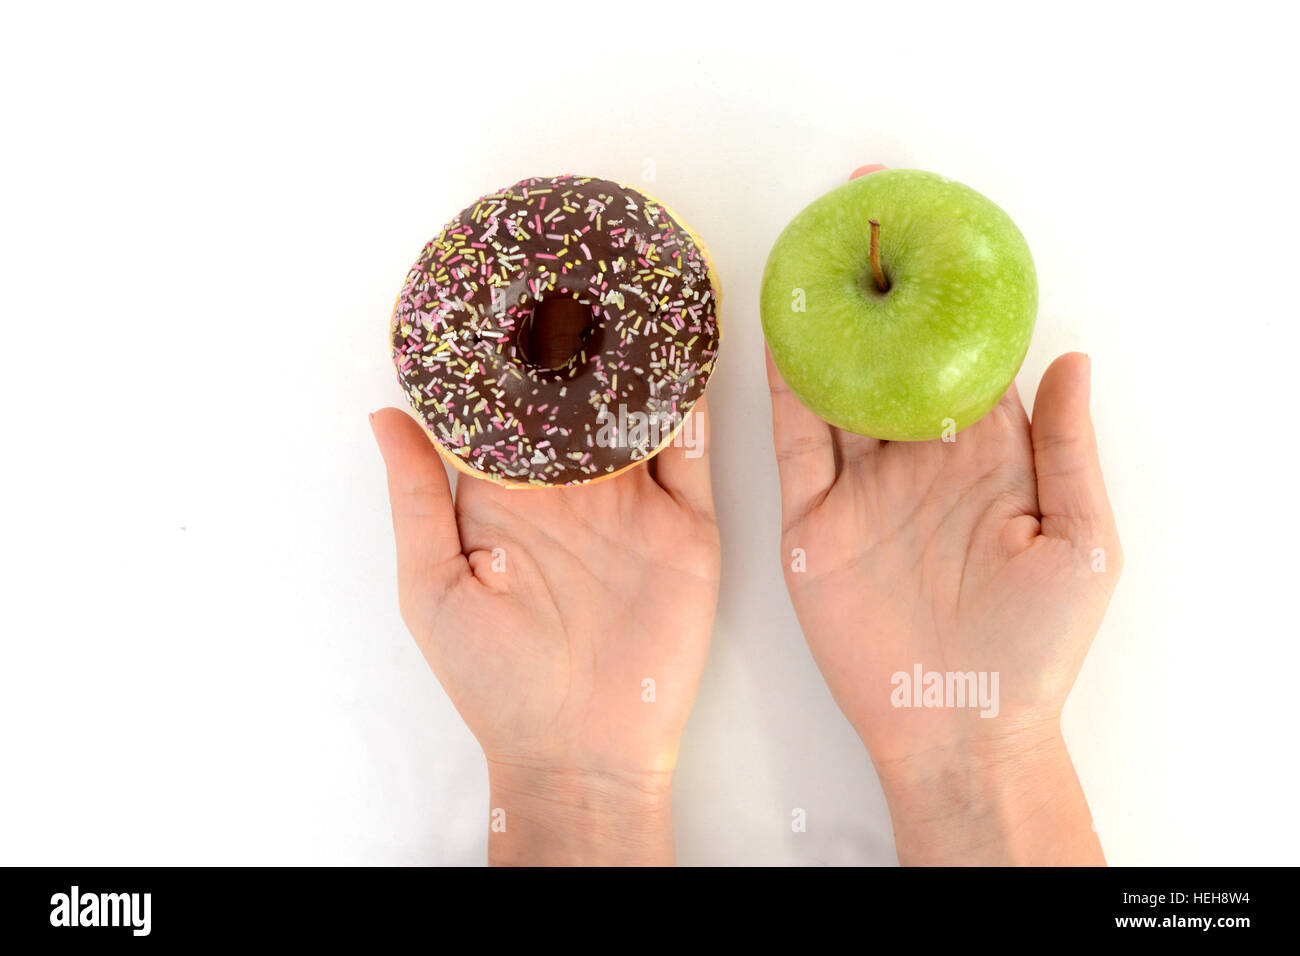 Gesunden Lebensstil oder Ernährung Konzept mit jungen Frau, die in den Händen halten, einen grünen Apfel und einen donut Stockfoto